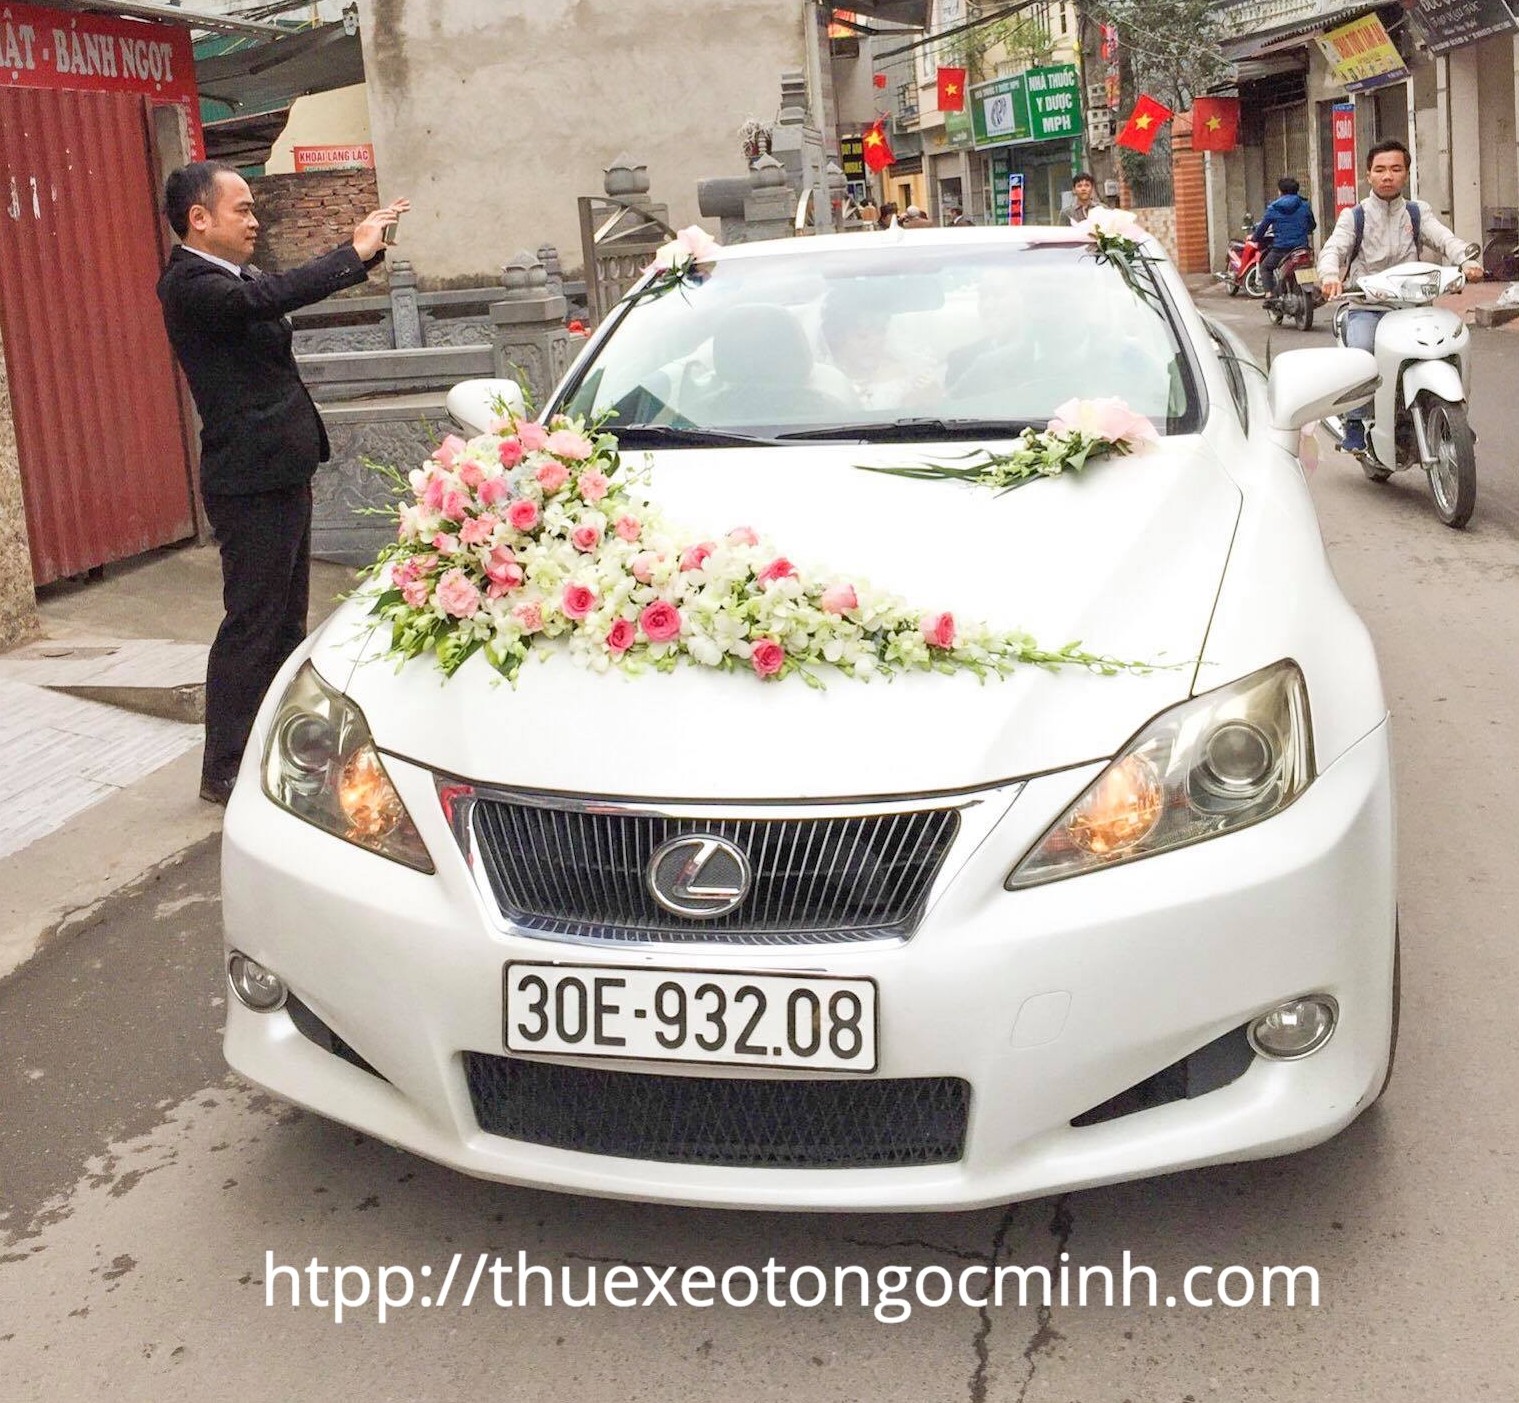 Thuê xe cưới Lexus tại Hà Nội